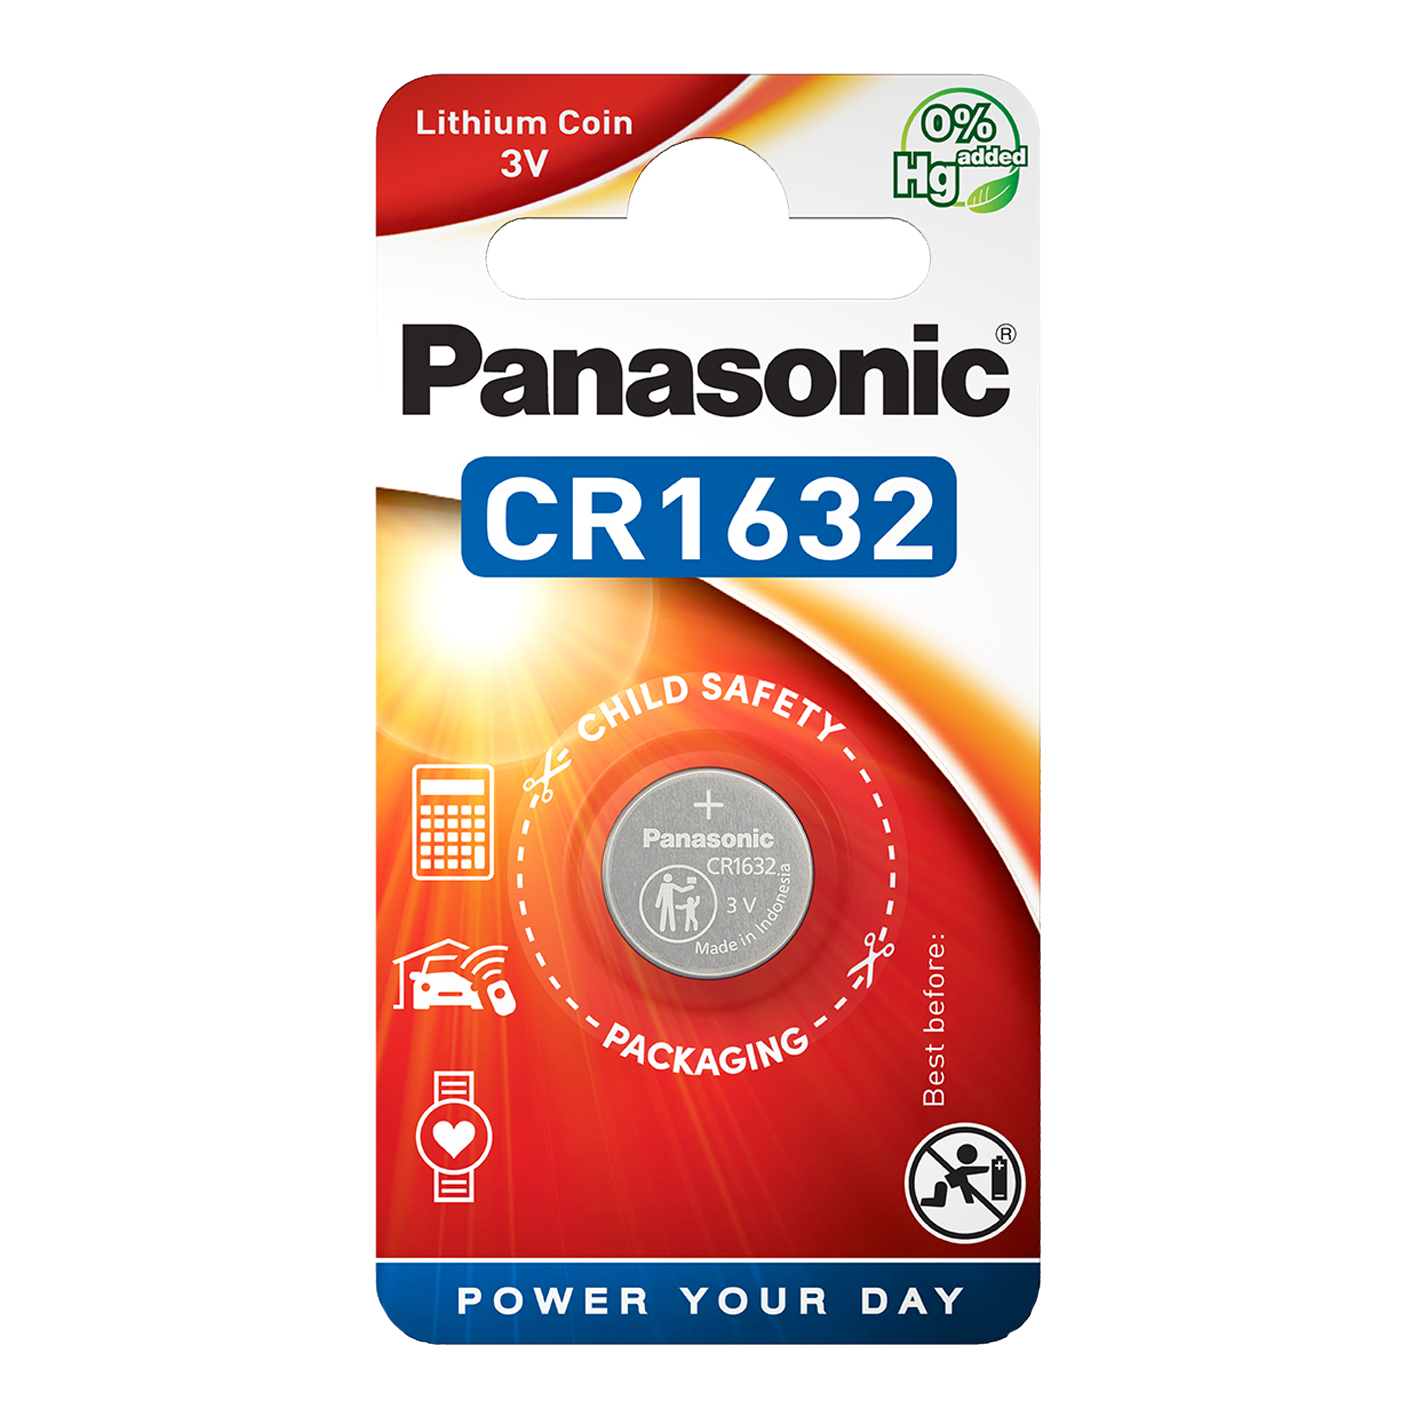 Panasonic CR1632 Lithium, Pack of 1